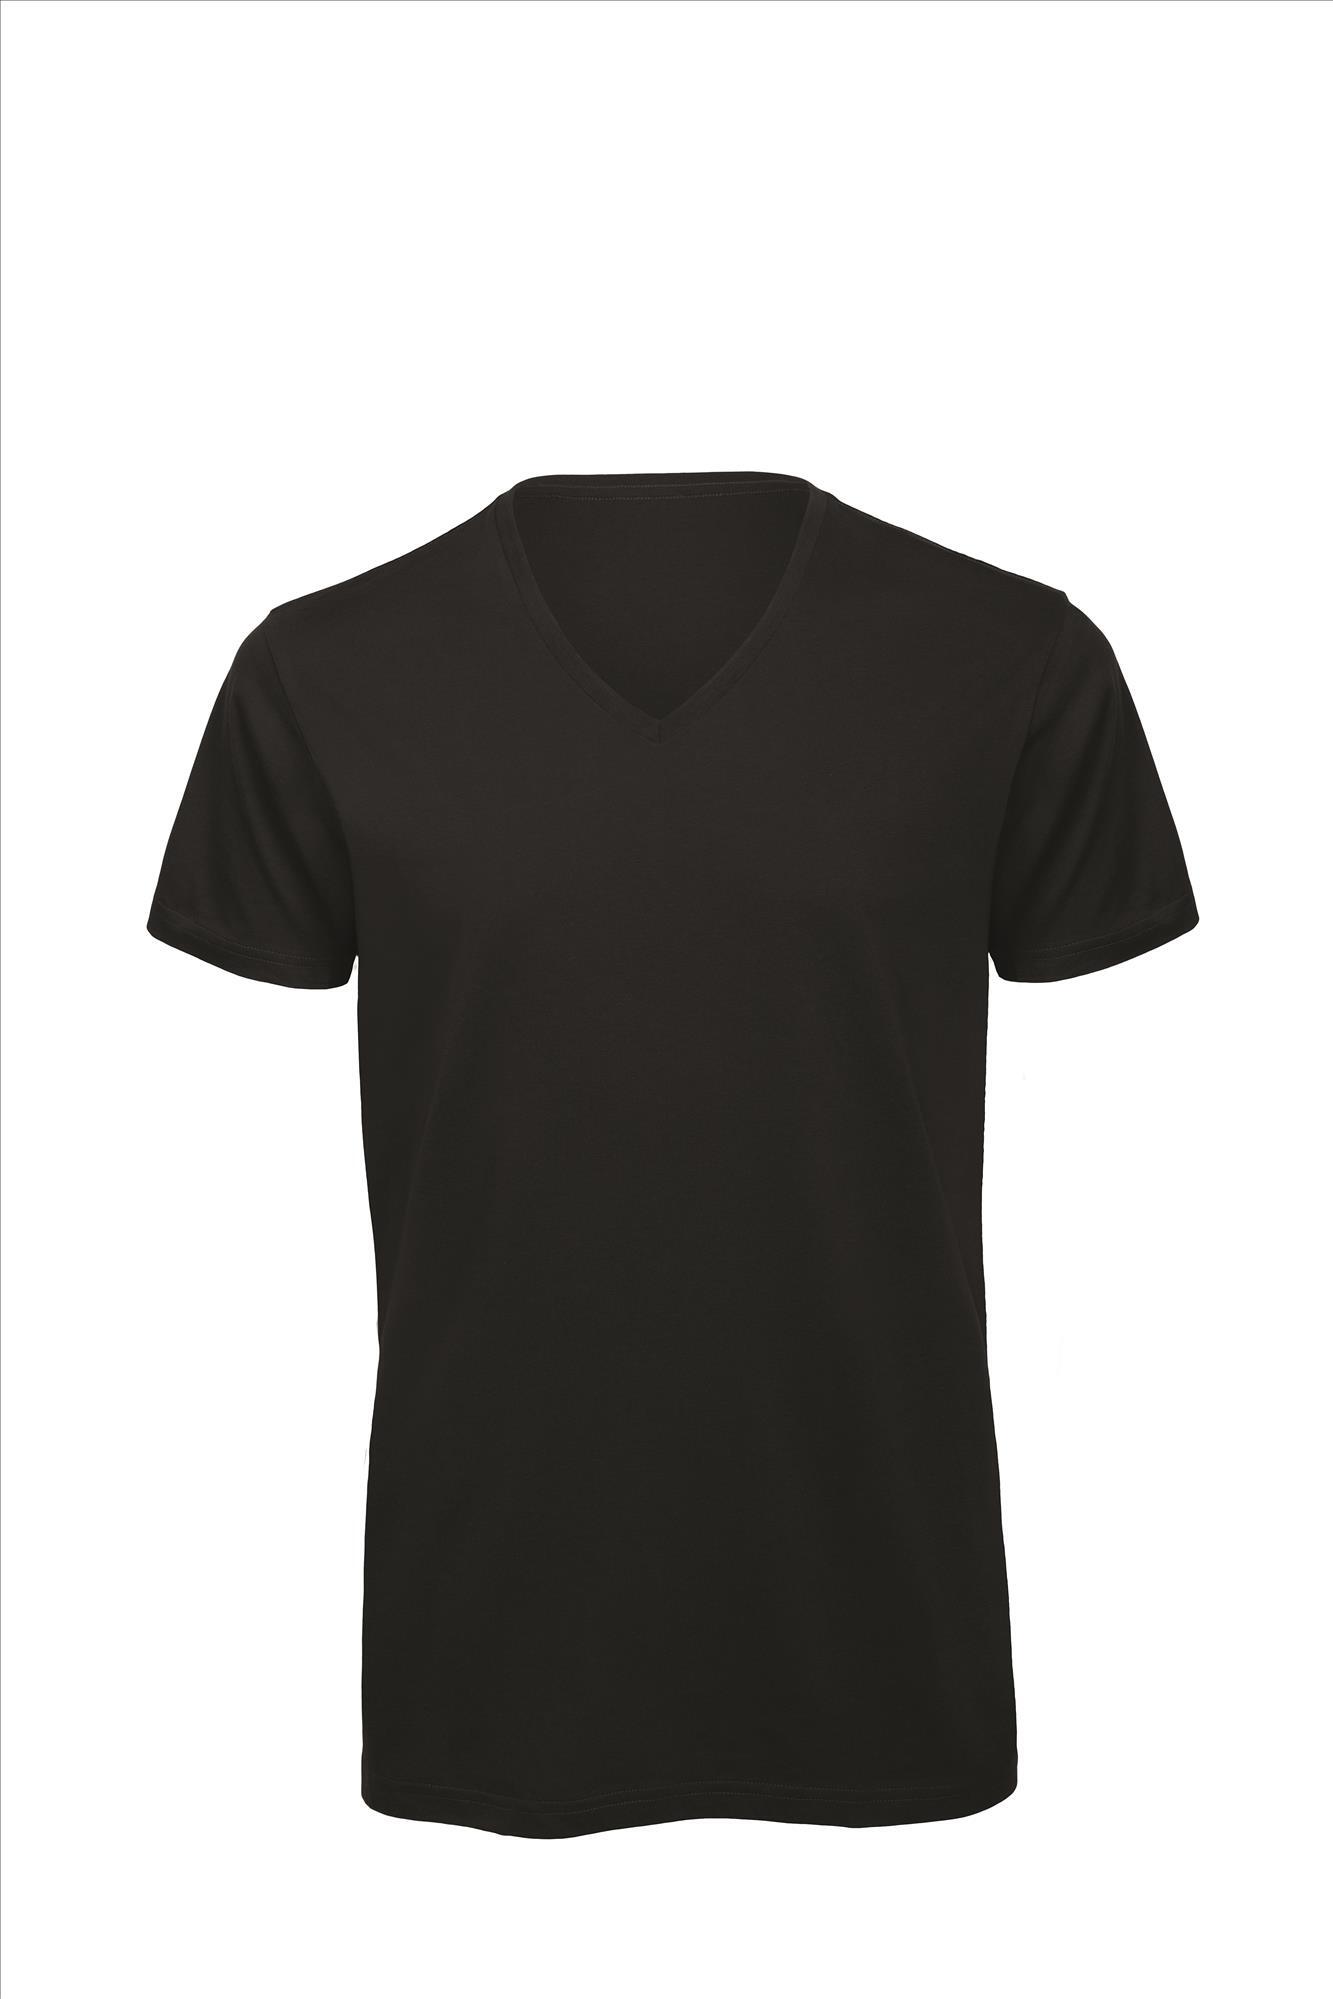 T-shirt met V-hals voor heren zwart Luxe bio kwaliteit